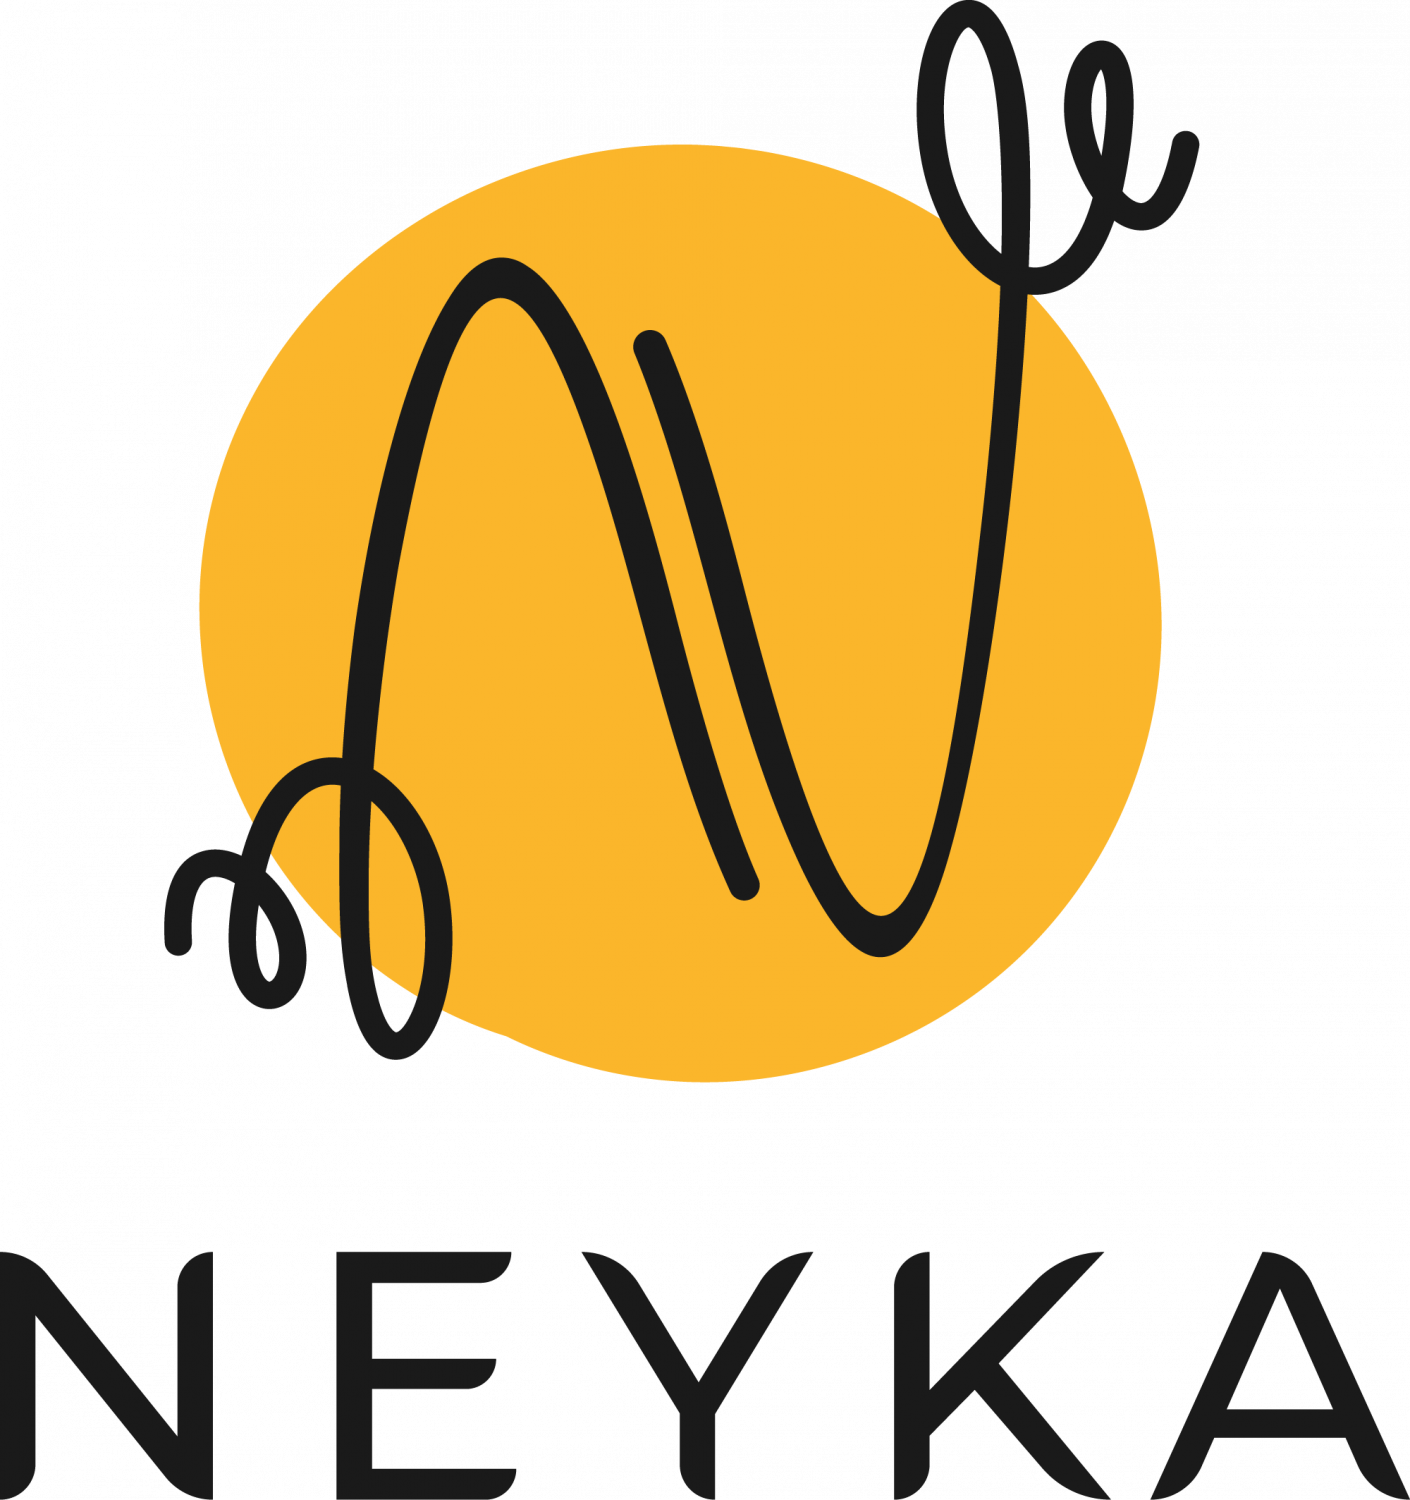 Logo de la startup Neyka